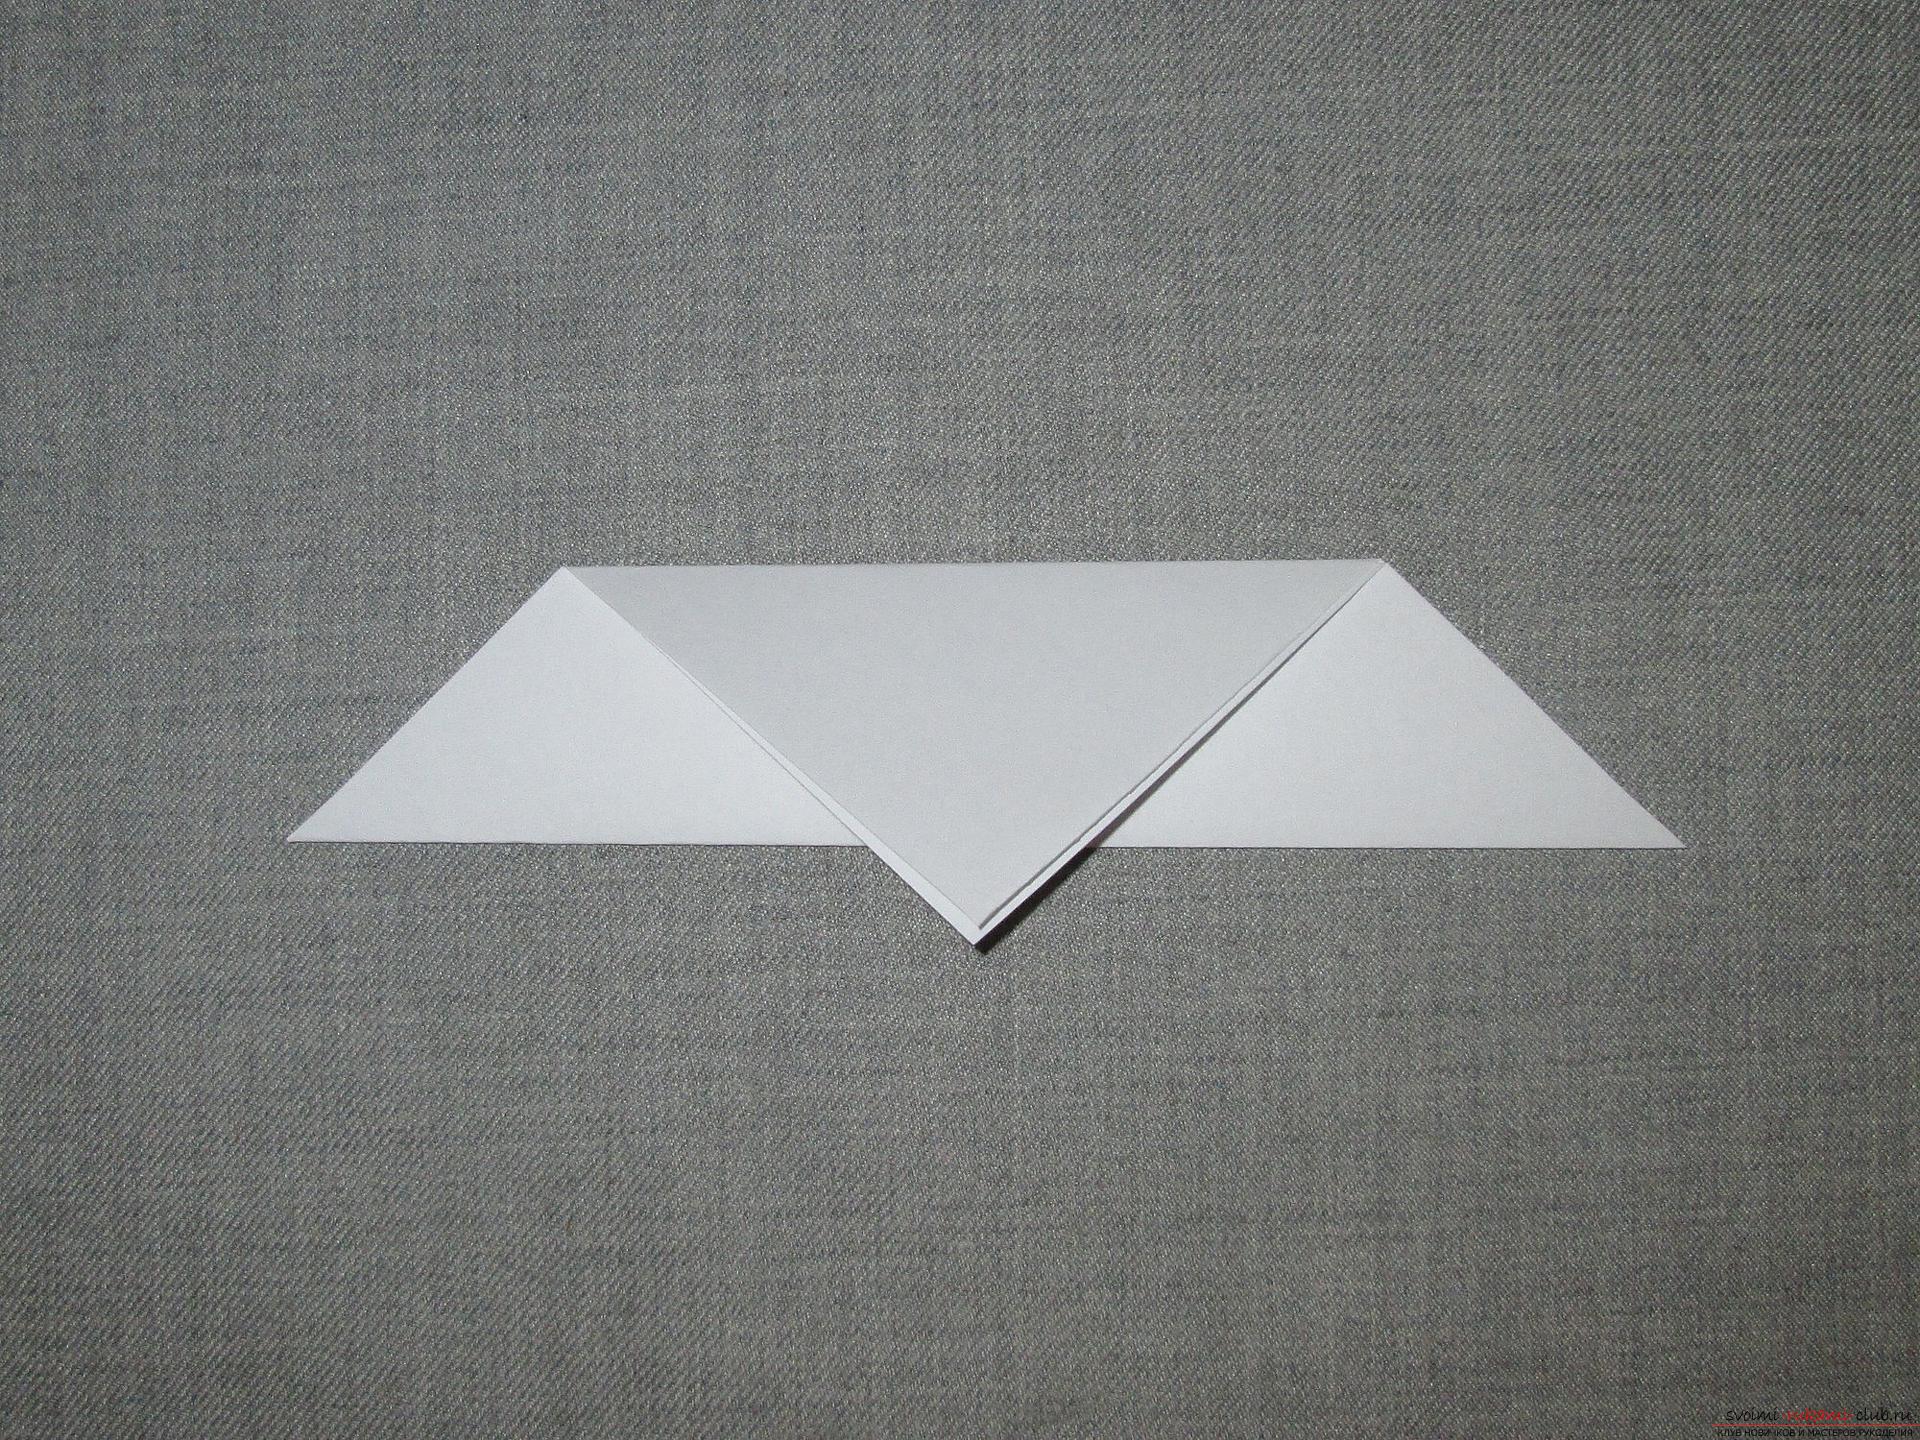 Deze gedetailleerde workshop van origami voor kinderen van 8 jaar zal leren hoe origami-duiven te maken van papier .. Foto # 4